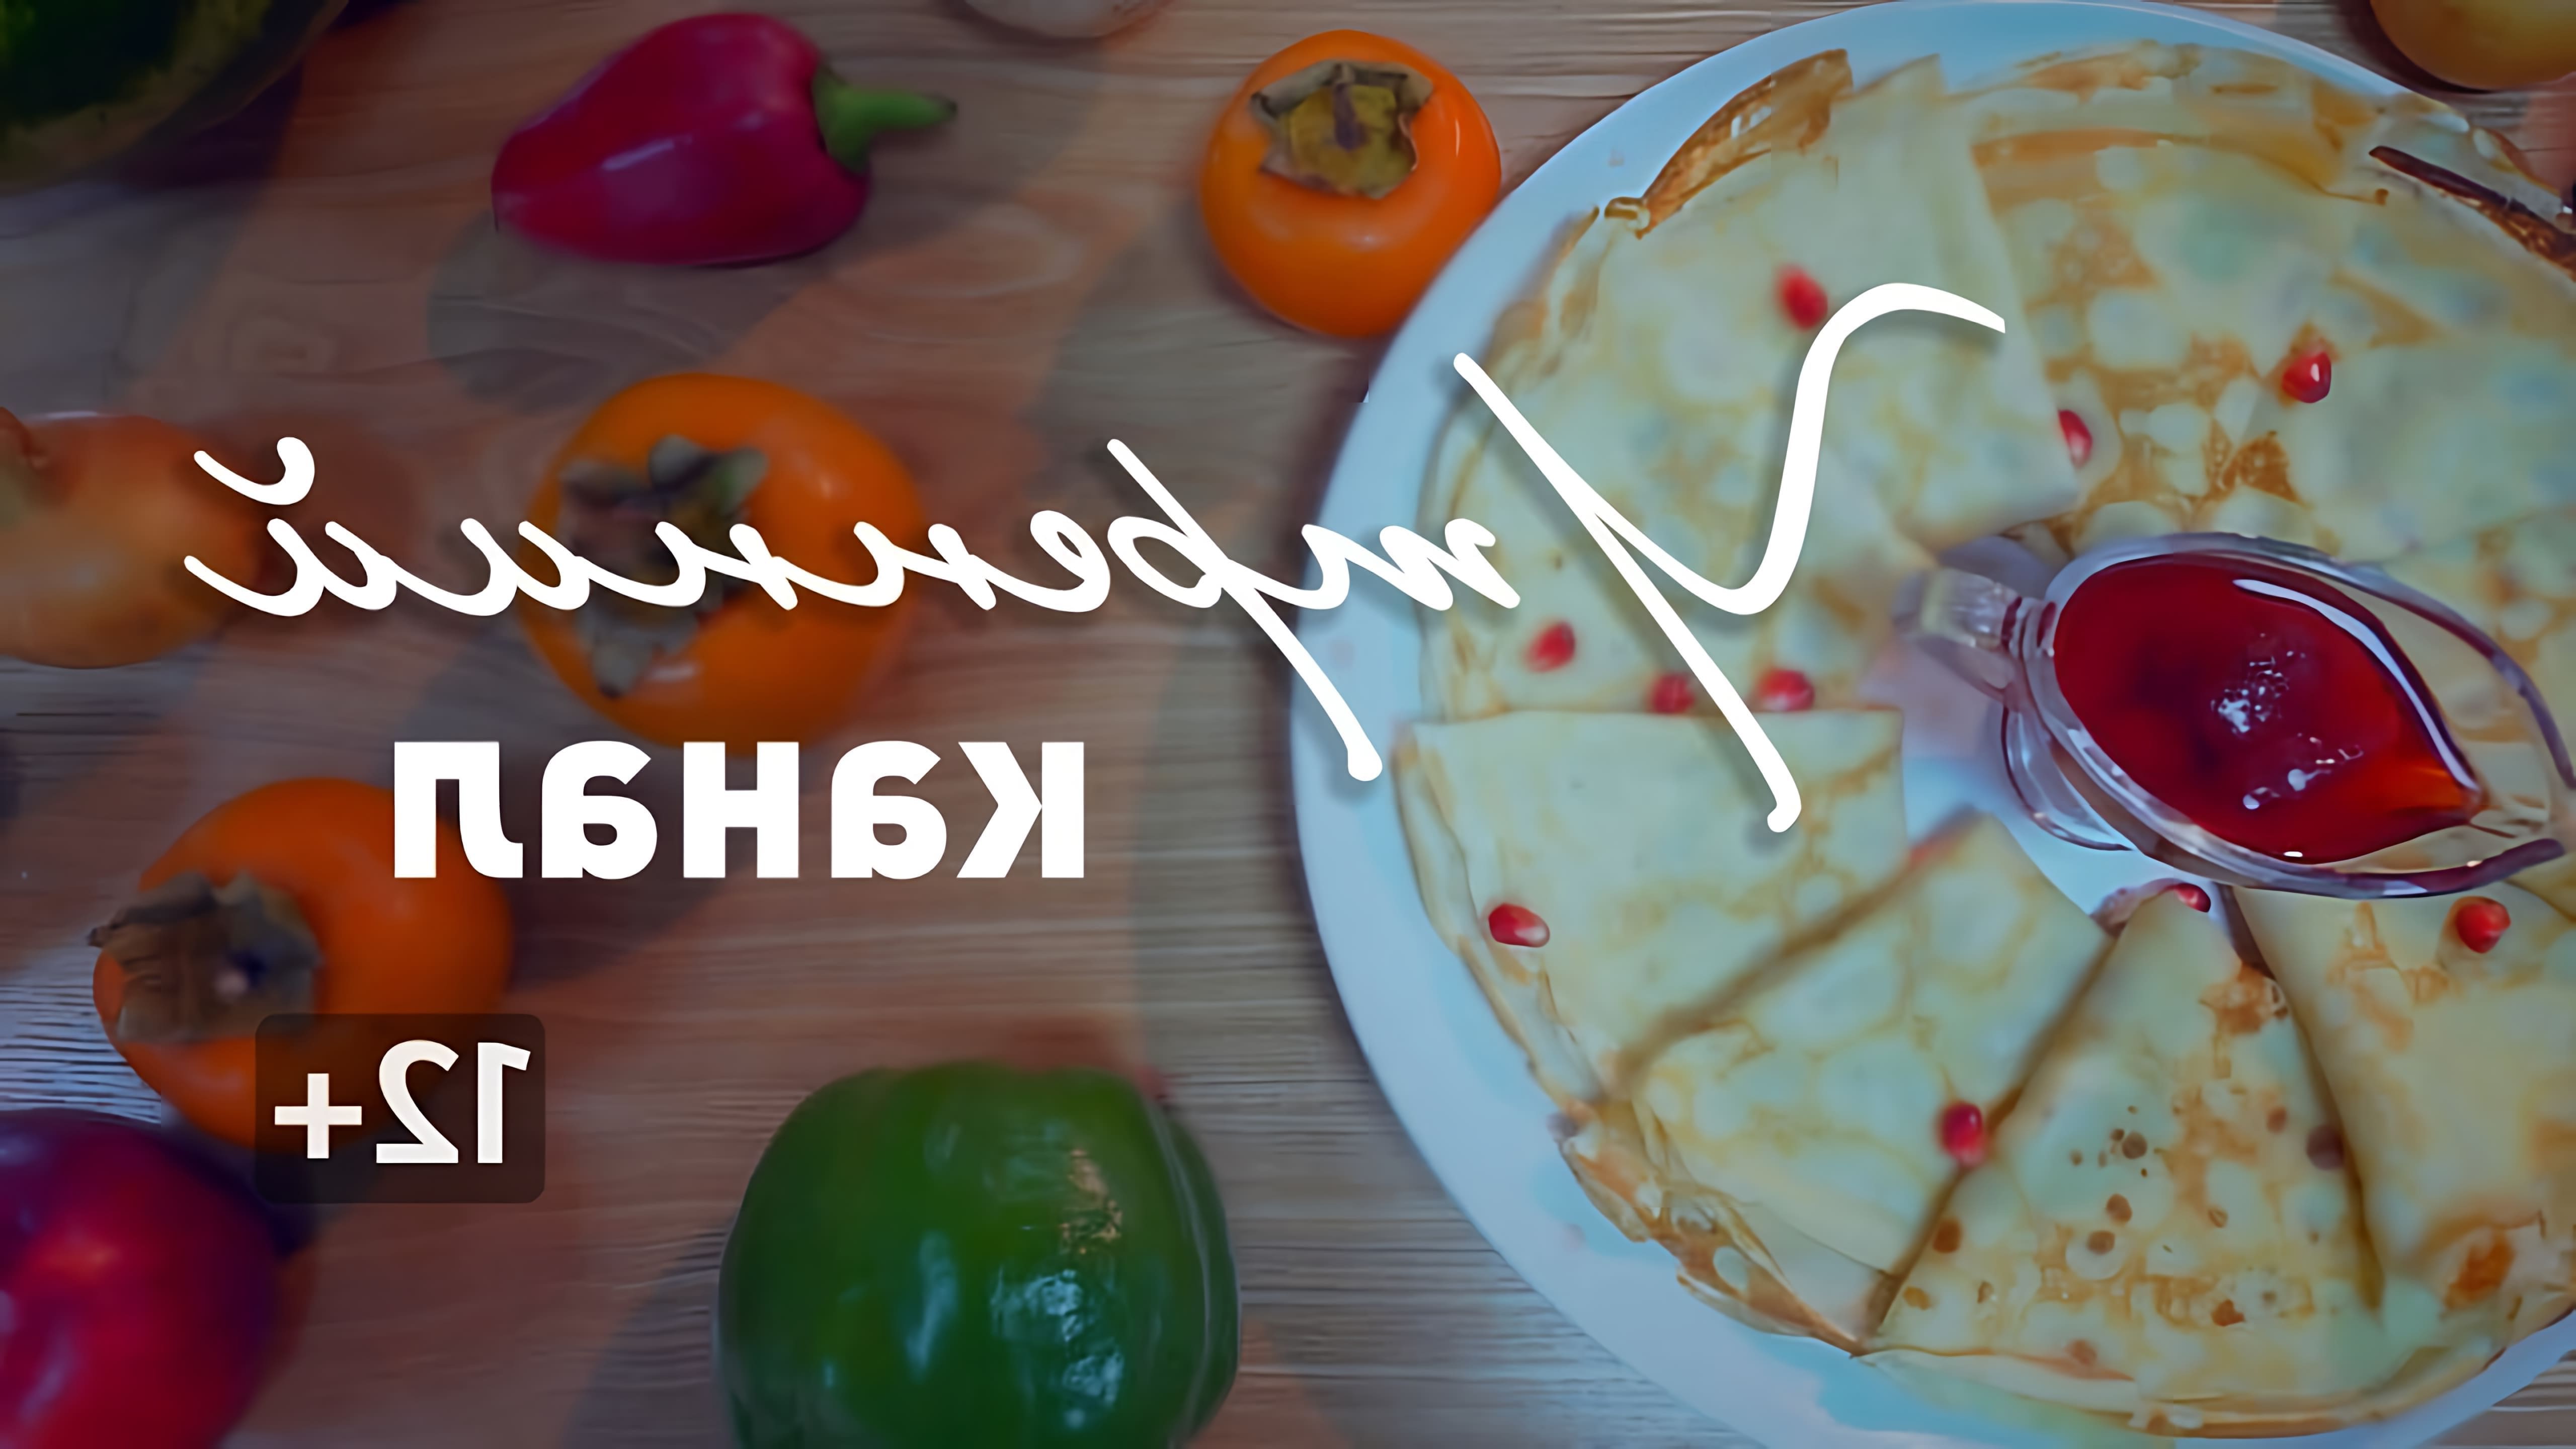 В этом видео "Утренний канал" готовит два блюда: лазанью с белыми грибами и куриные шашлычки